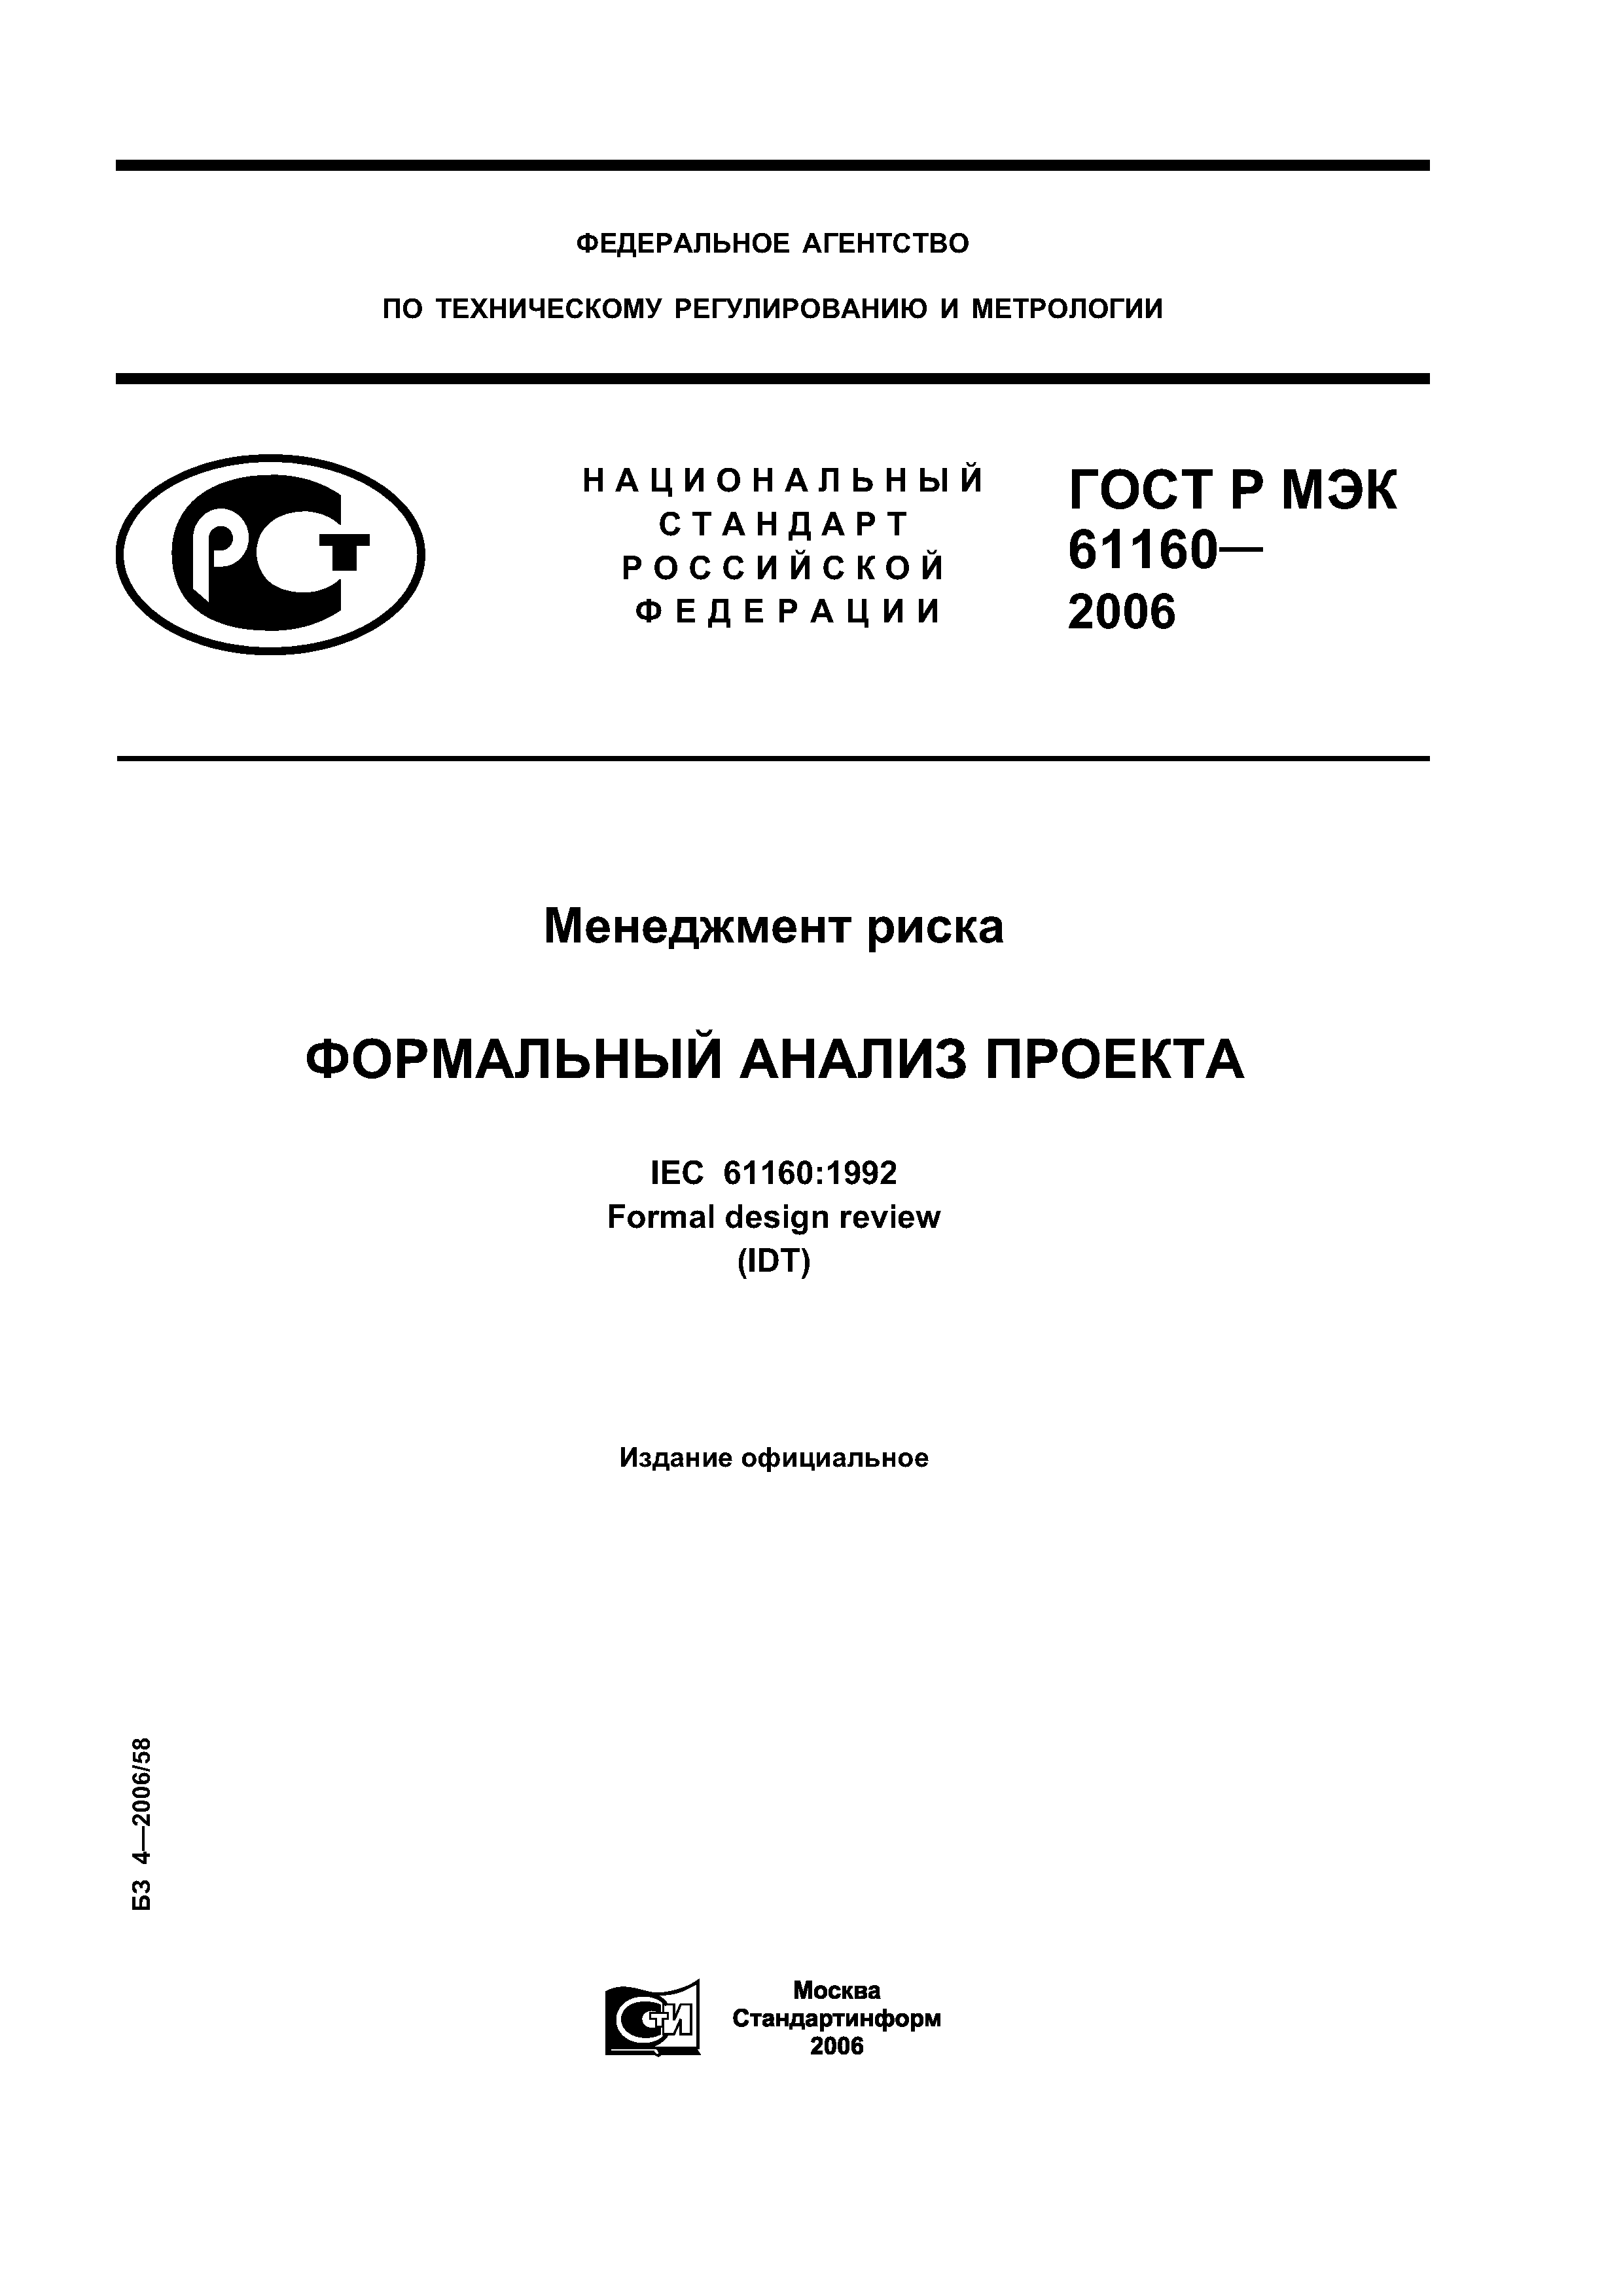 ГОСТ Р МЭК 61160-2006